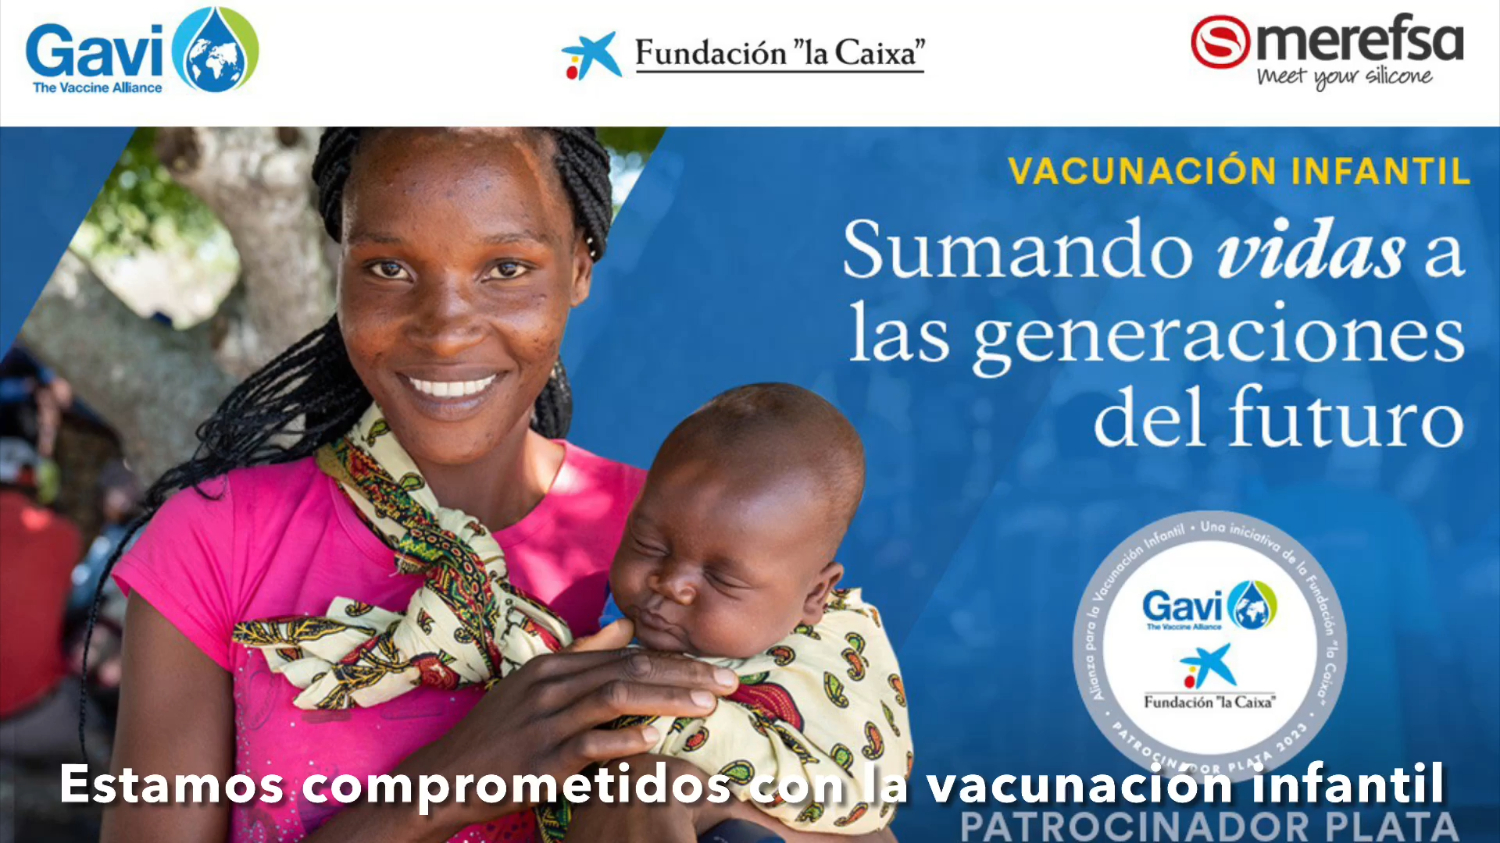 Octavo aniversario de colaboración con GAVI y La Caixa para la Vacunación Infantil